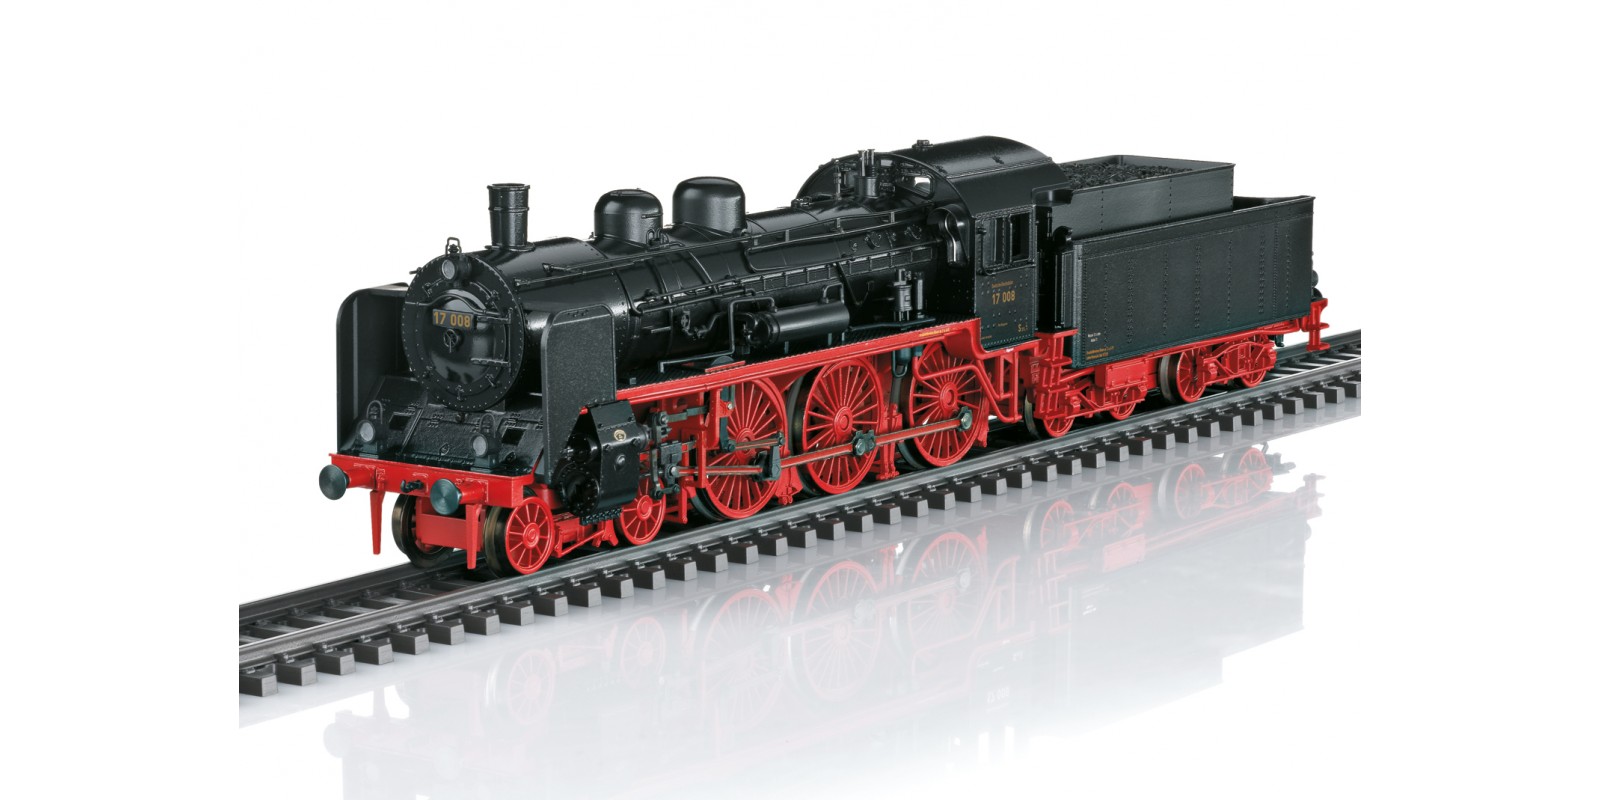 T25170 Cl 17 Steam Locomotive DRG